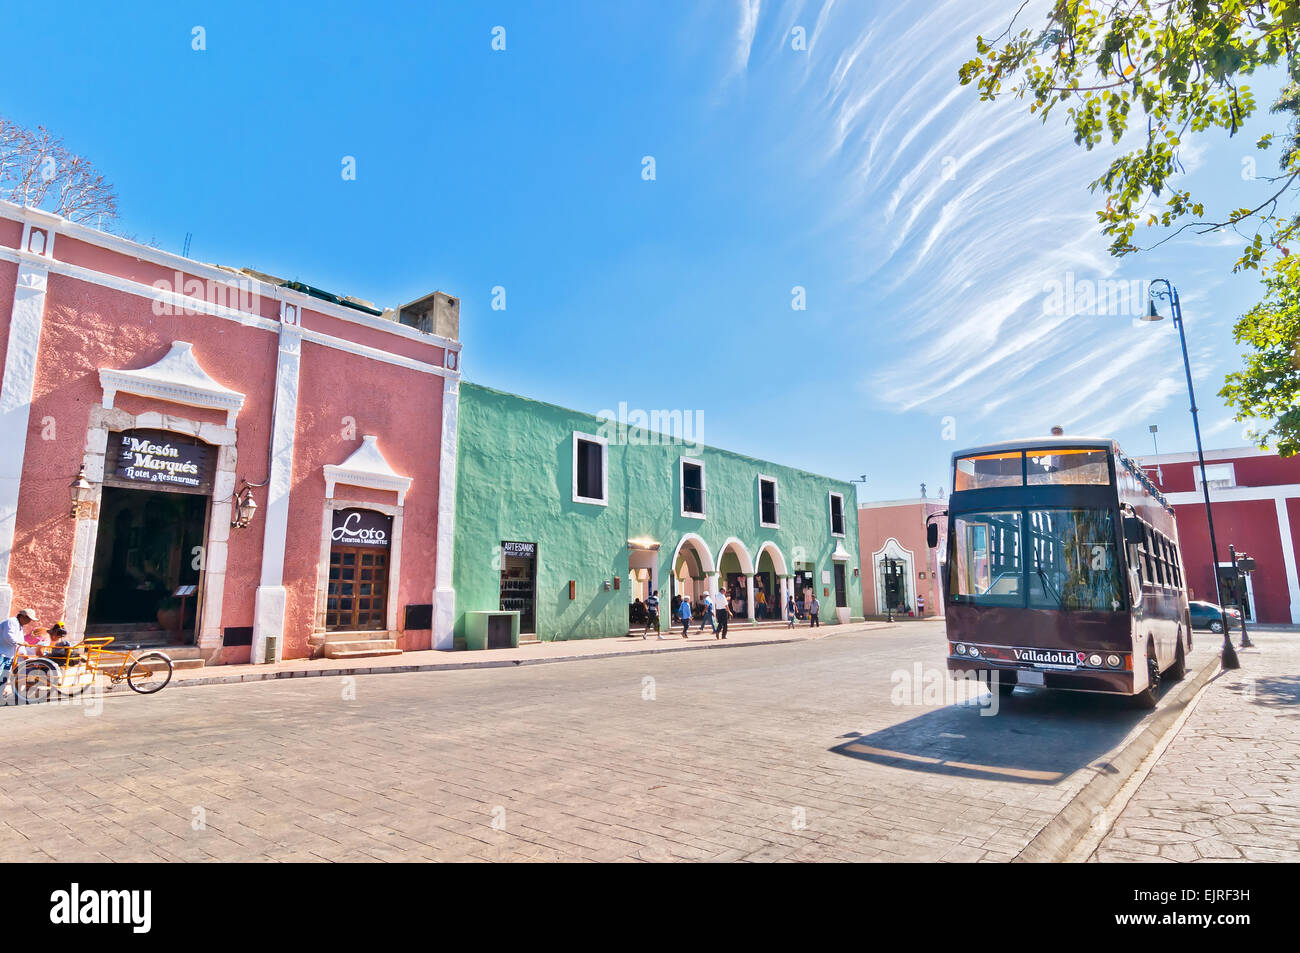 Calle ldowntown con típicas construcciones coloniales en Valladolid Foto de stock